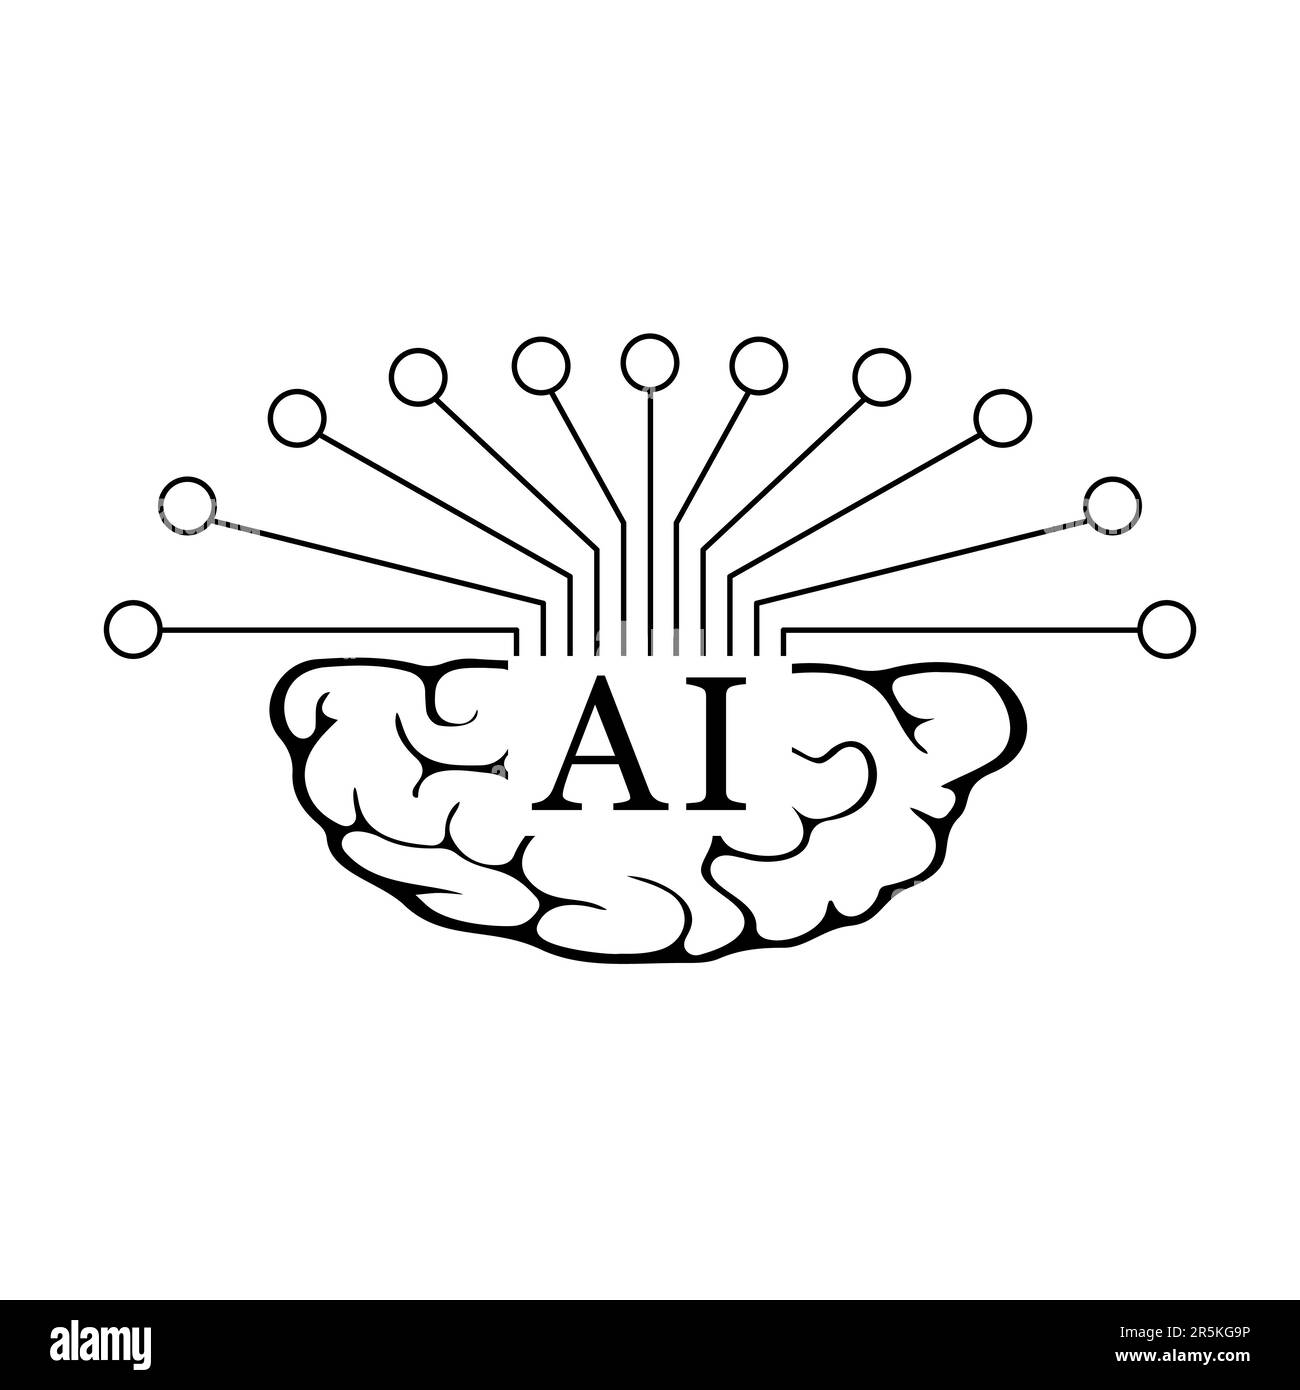 Ein Symbol für künstliche Intelligenz in Schwarz ist ein schlankes und stilvolles Grafikelement, das das Konzept der künstlichen Intelligenz oder KI repräsentiert. Stock Vektor